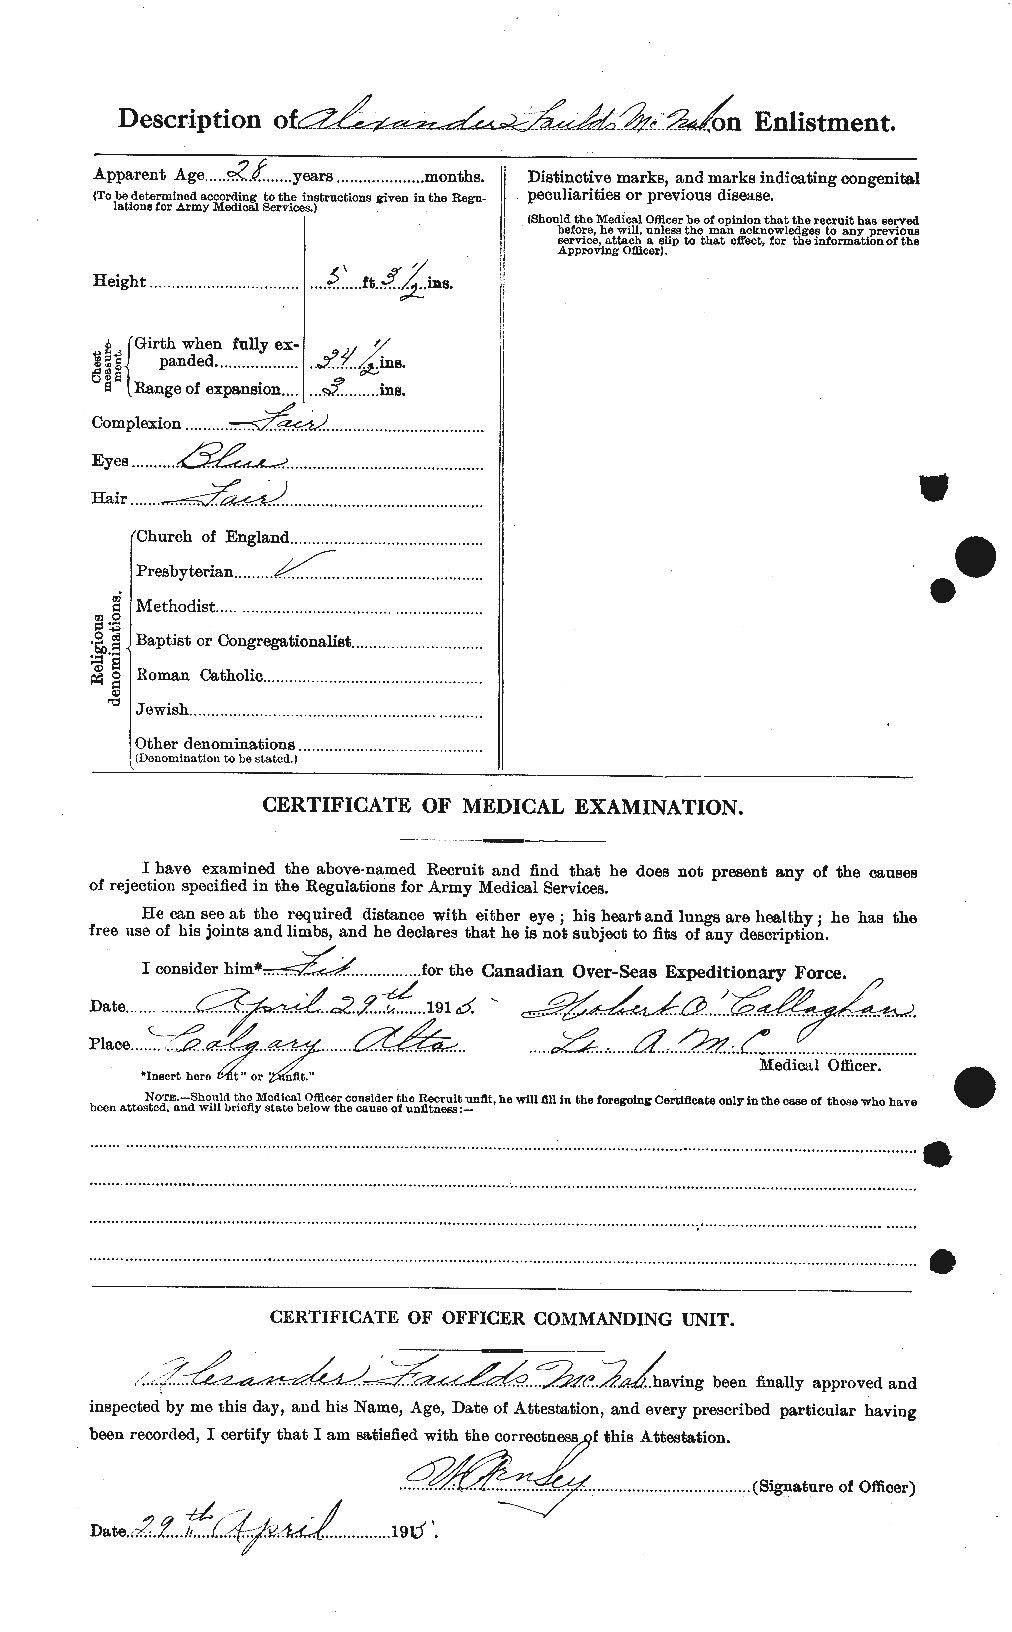 Dossiers du Personnel de la Première Guerre mondiale - CEC 539514b